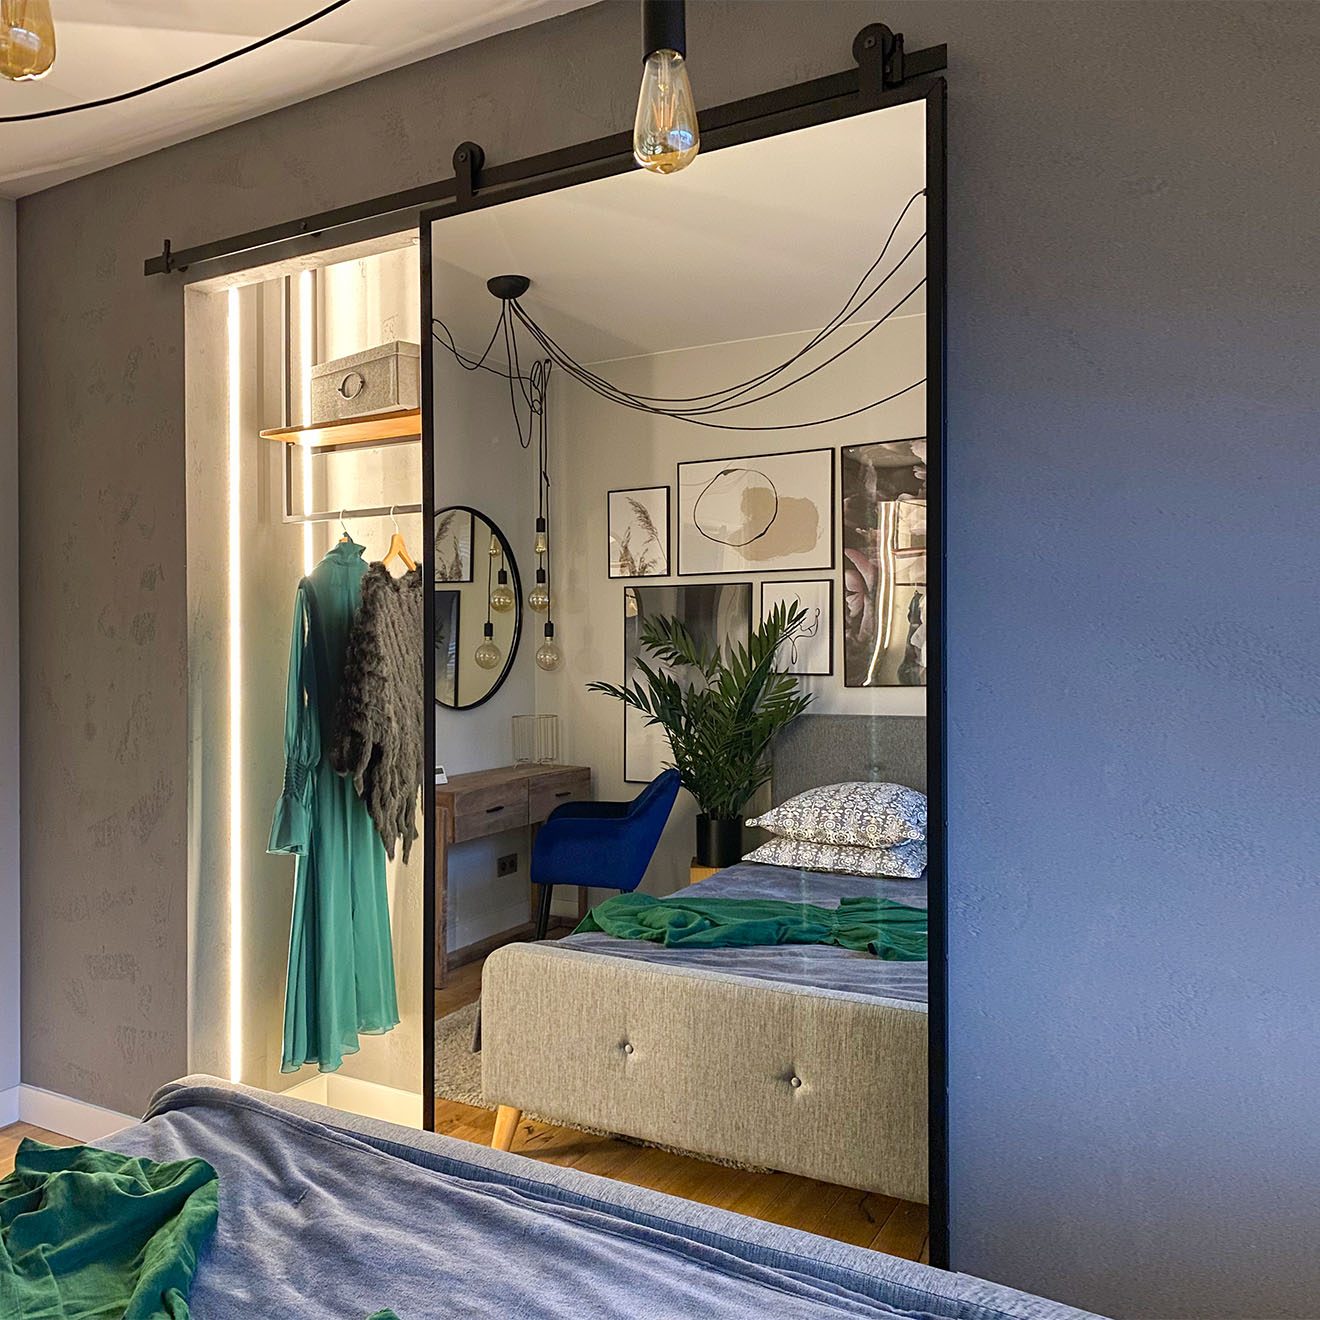 otwarte drzwi przesuwne z lustrem ukazujące małą garderobę we wnęce przy sypialni urządzonej w szarościach